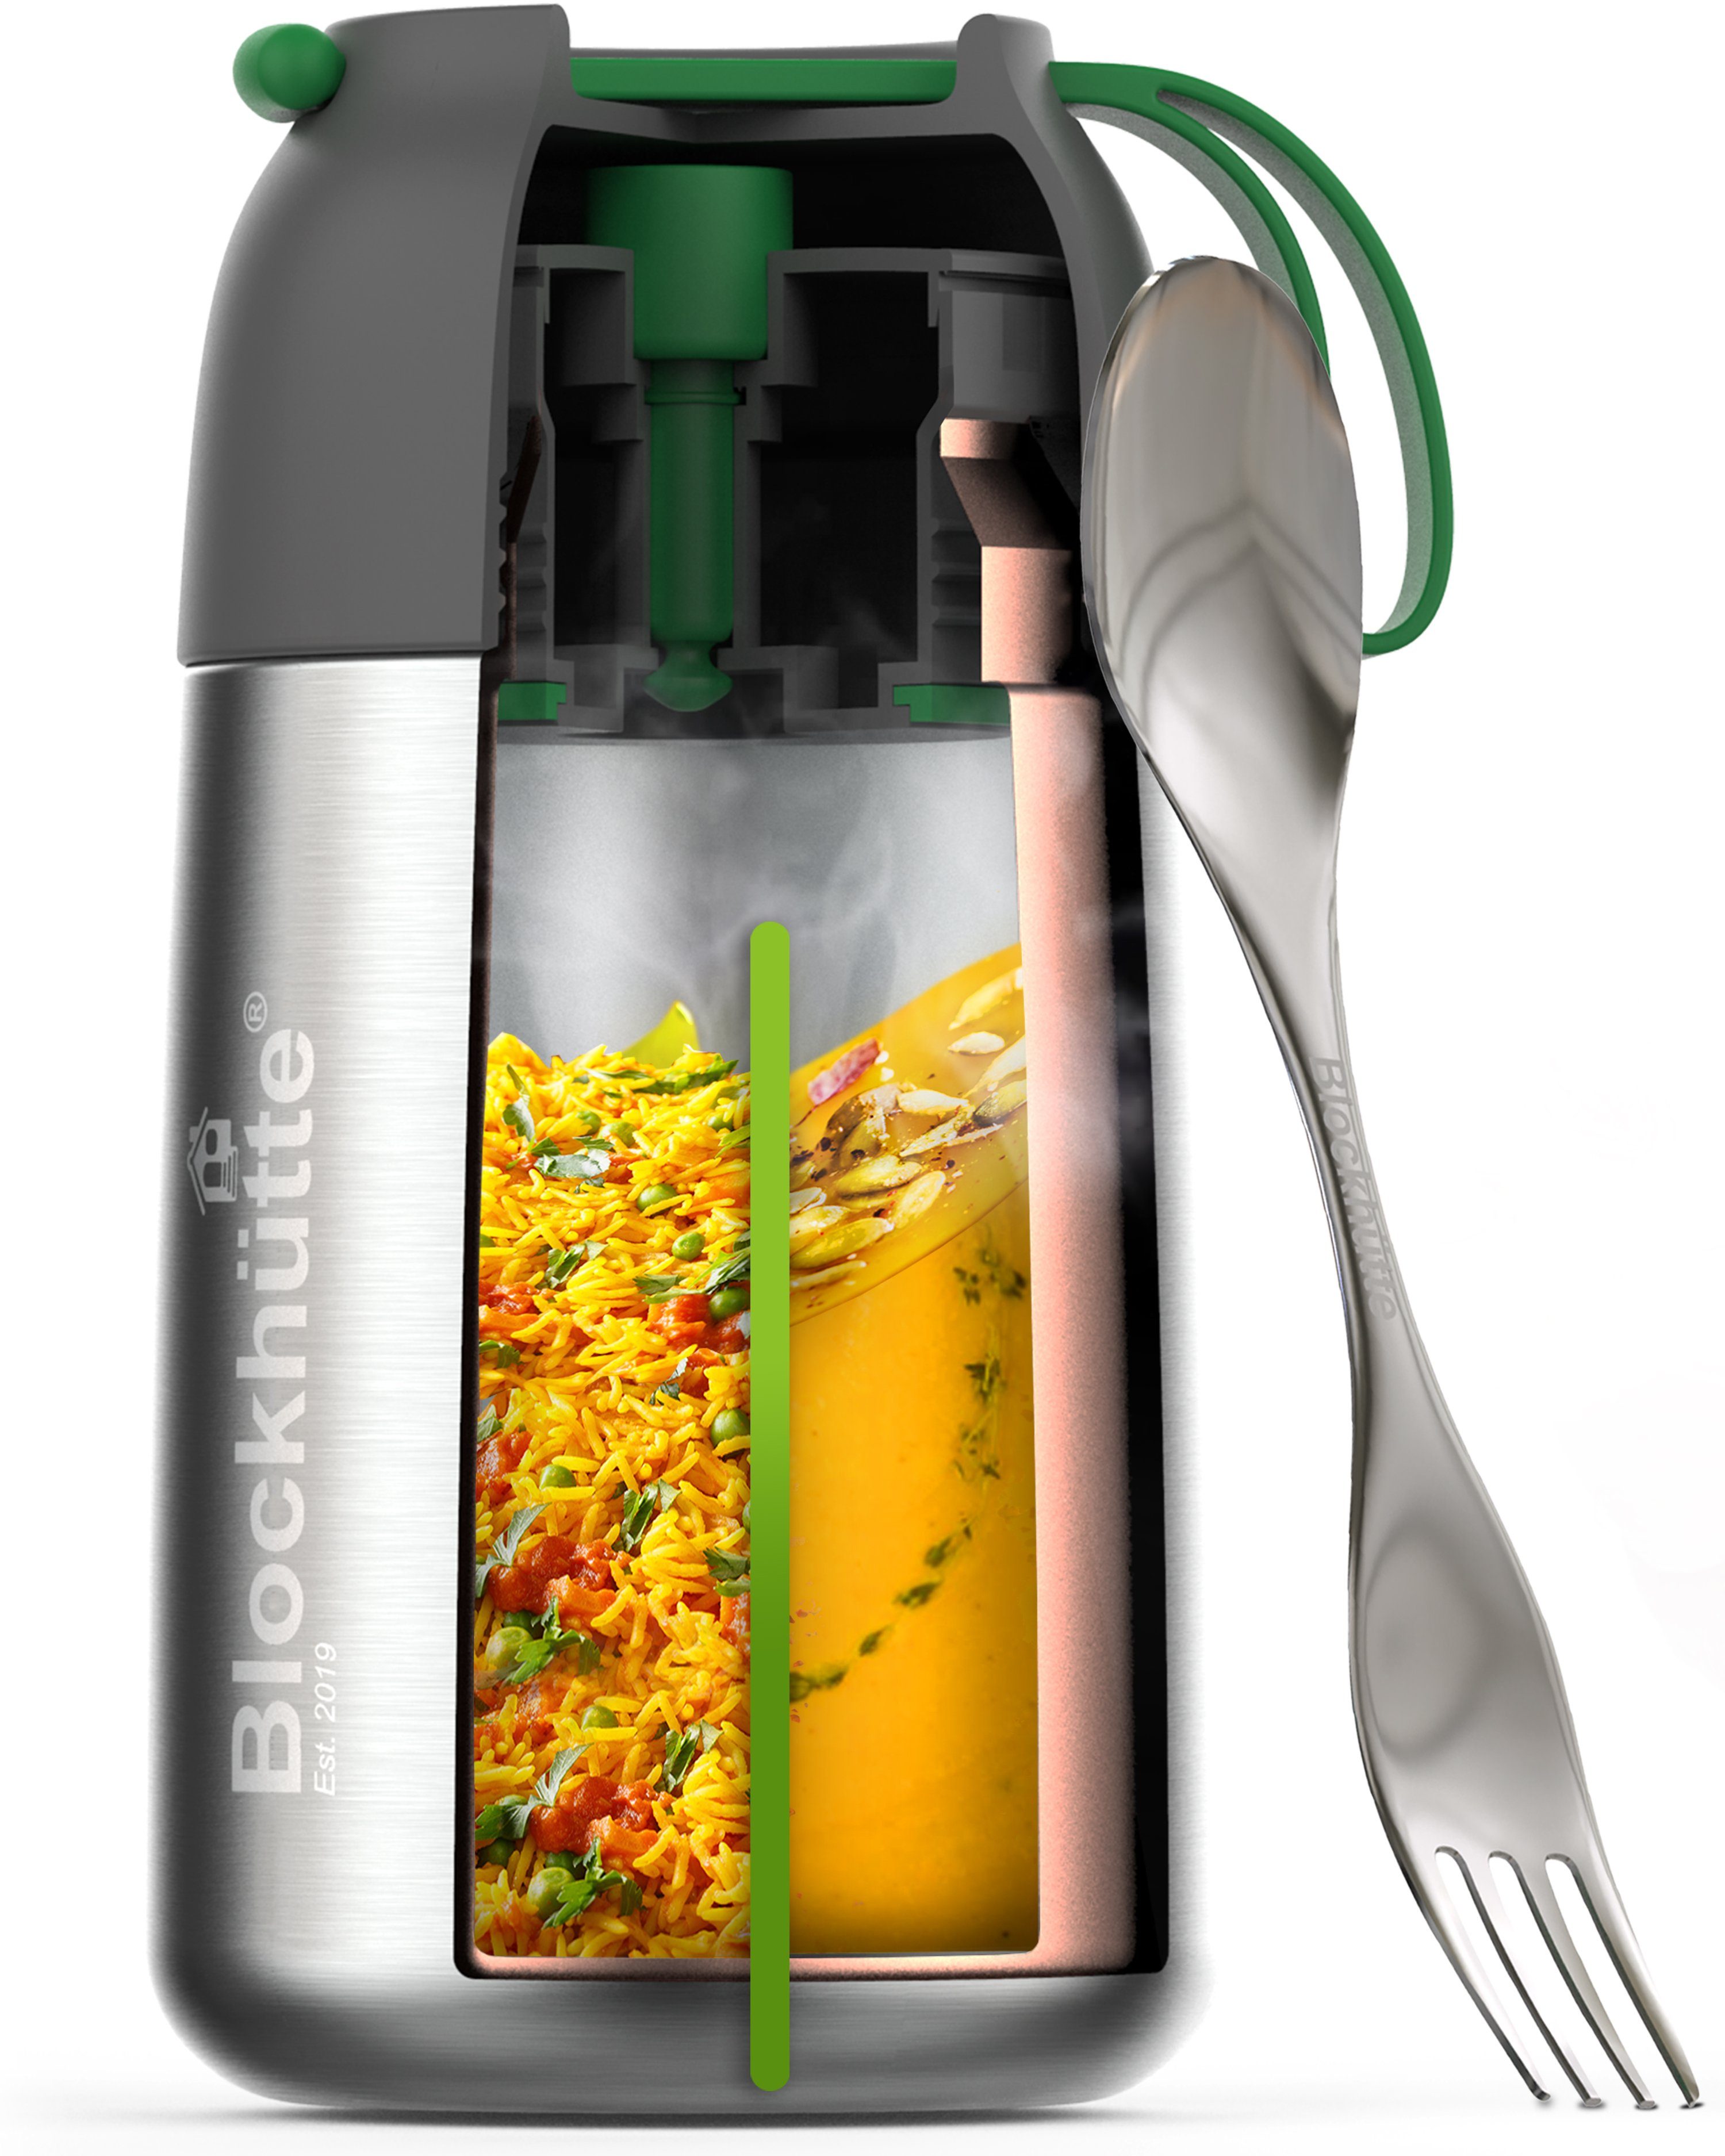 Edelstahl Thermo Lunchbox mit Anti - Vakuum Stöpsel - 530ml